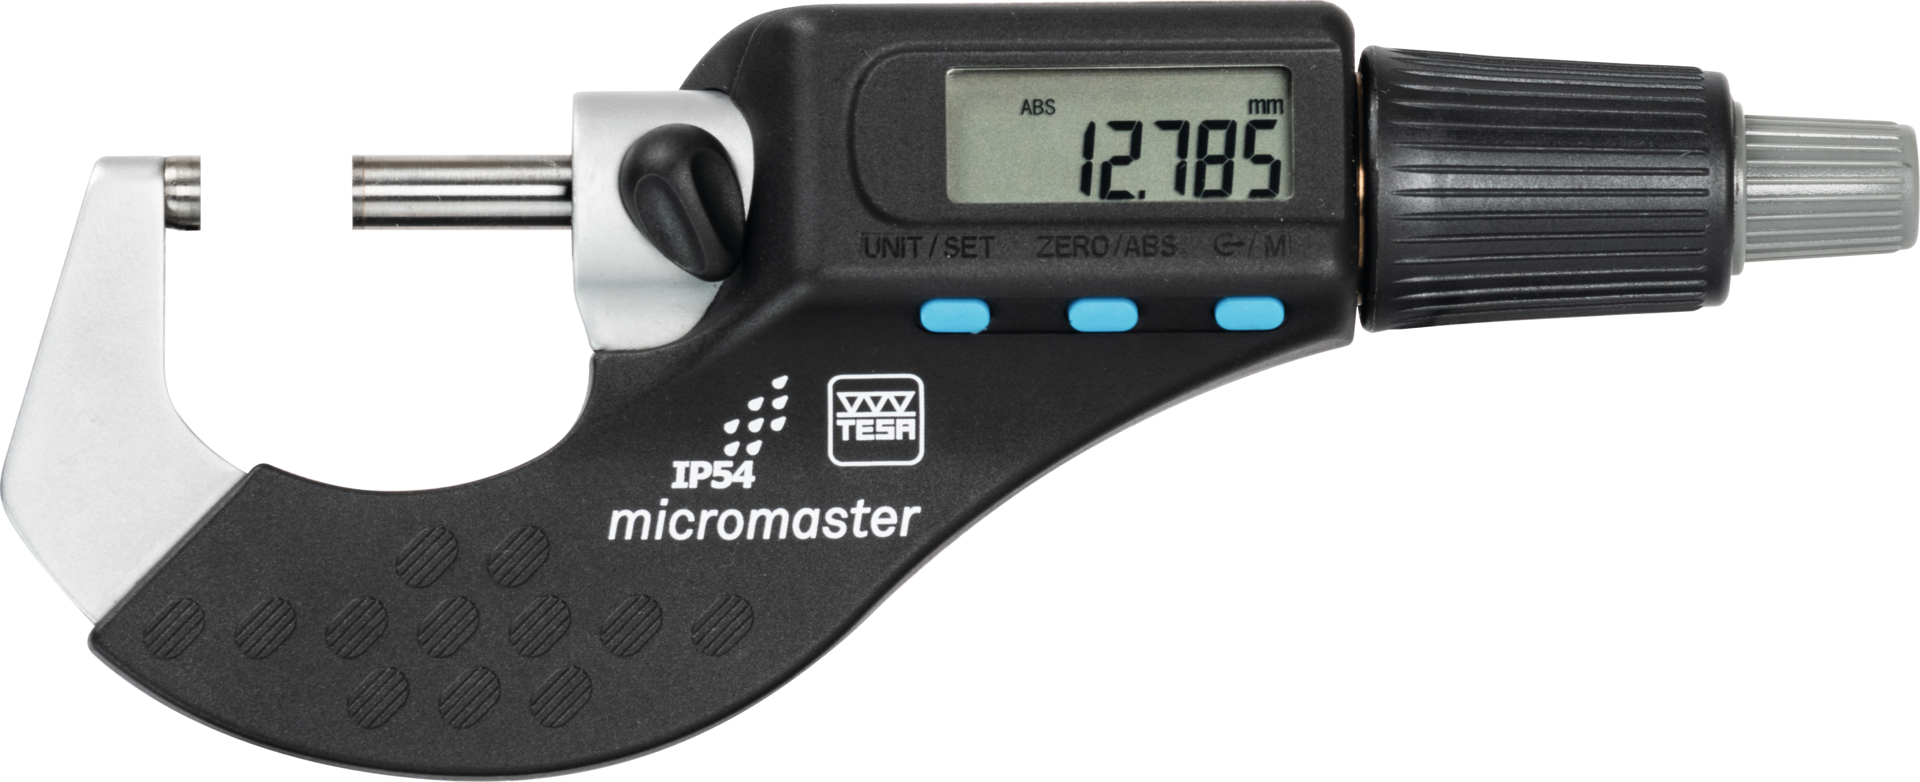 Bügelmessschraube Digital IP54 "micromaster" Abl. 0,001mm mit SCS-Kalibrierschein DIN863-1 MB25-50mm